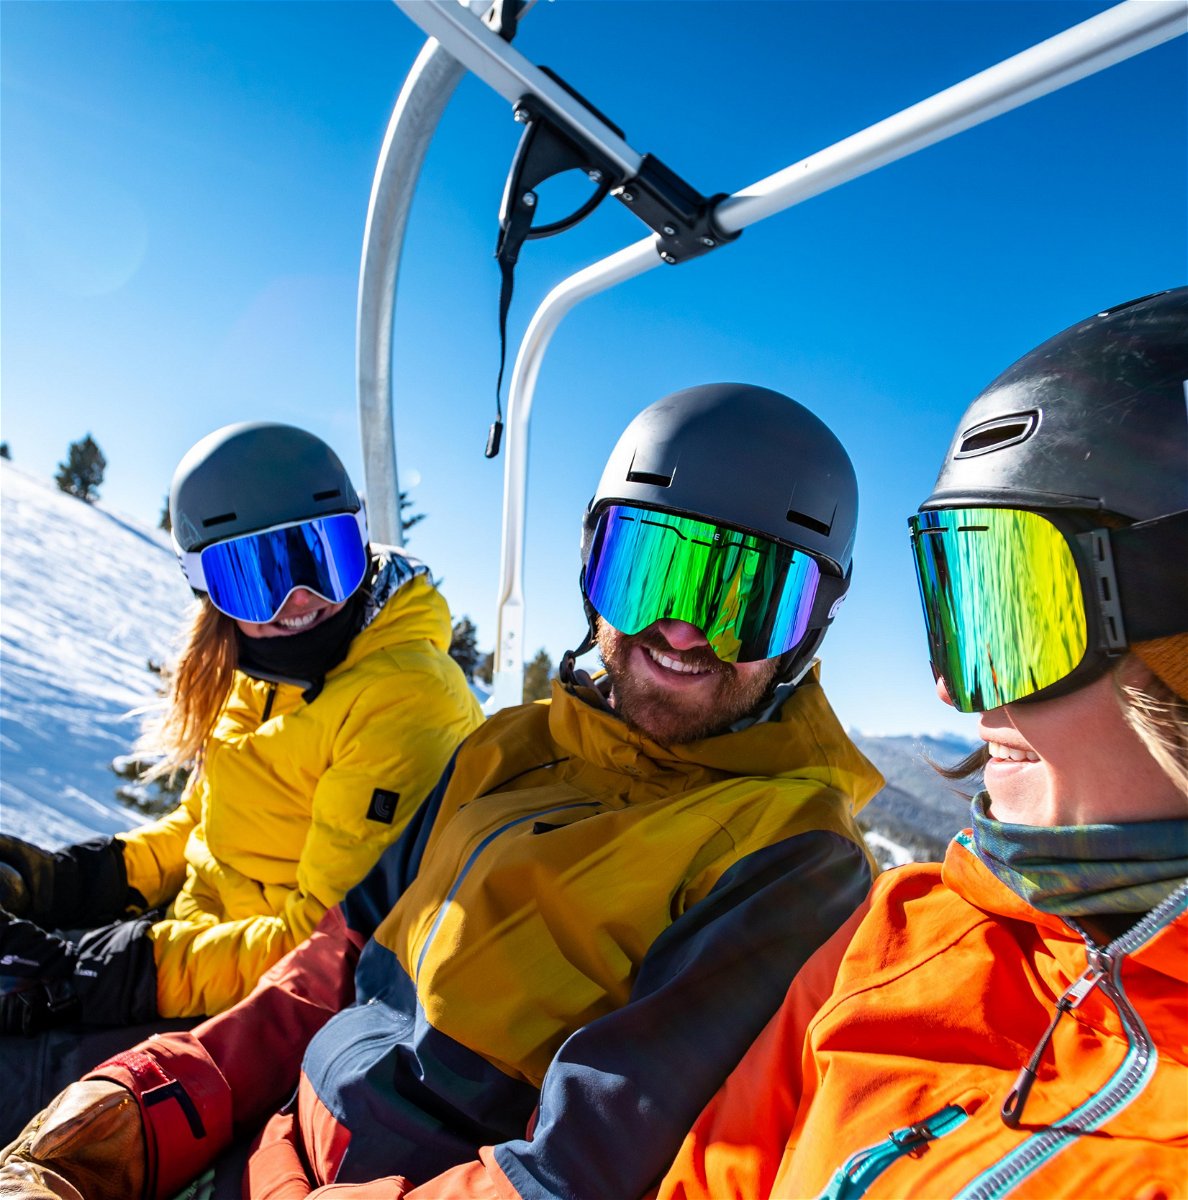 3 people sat on a ski lift